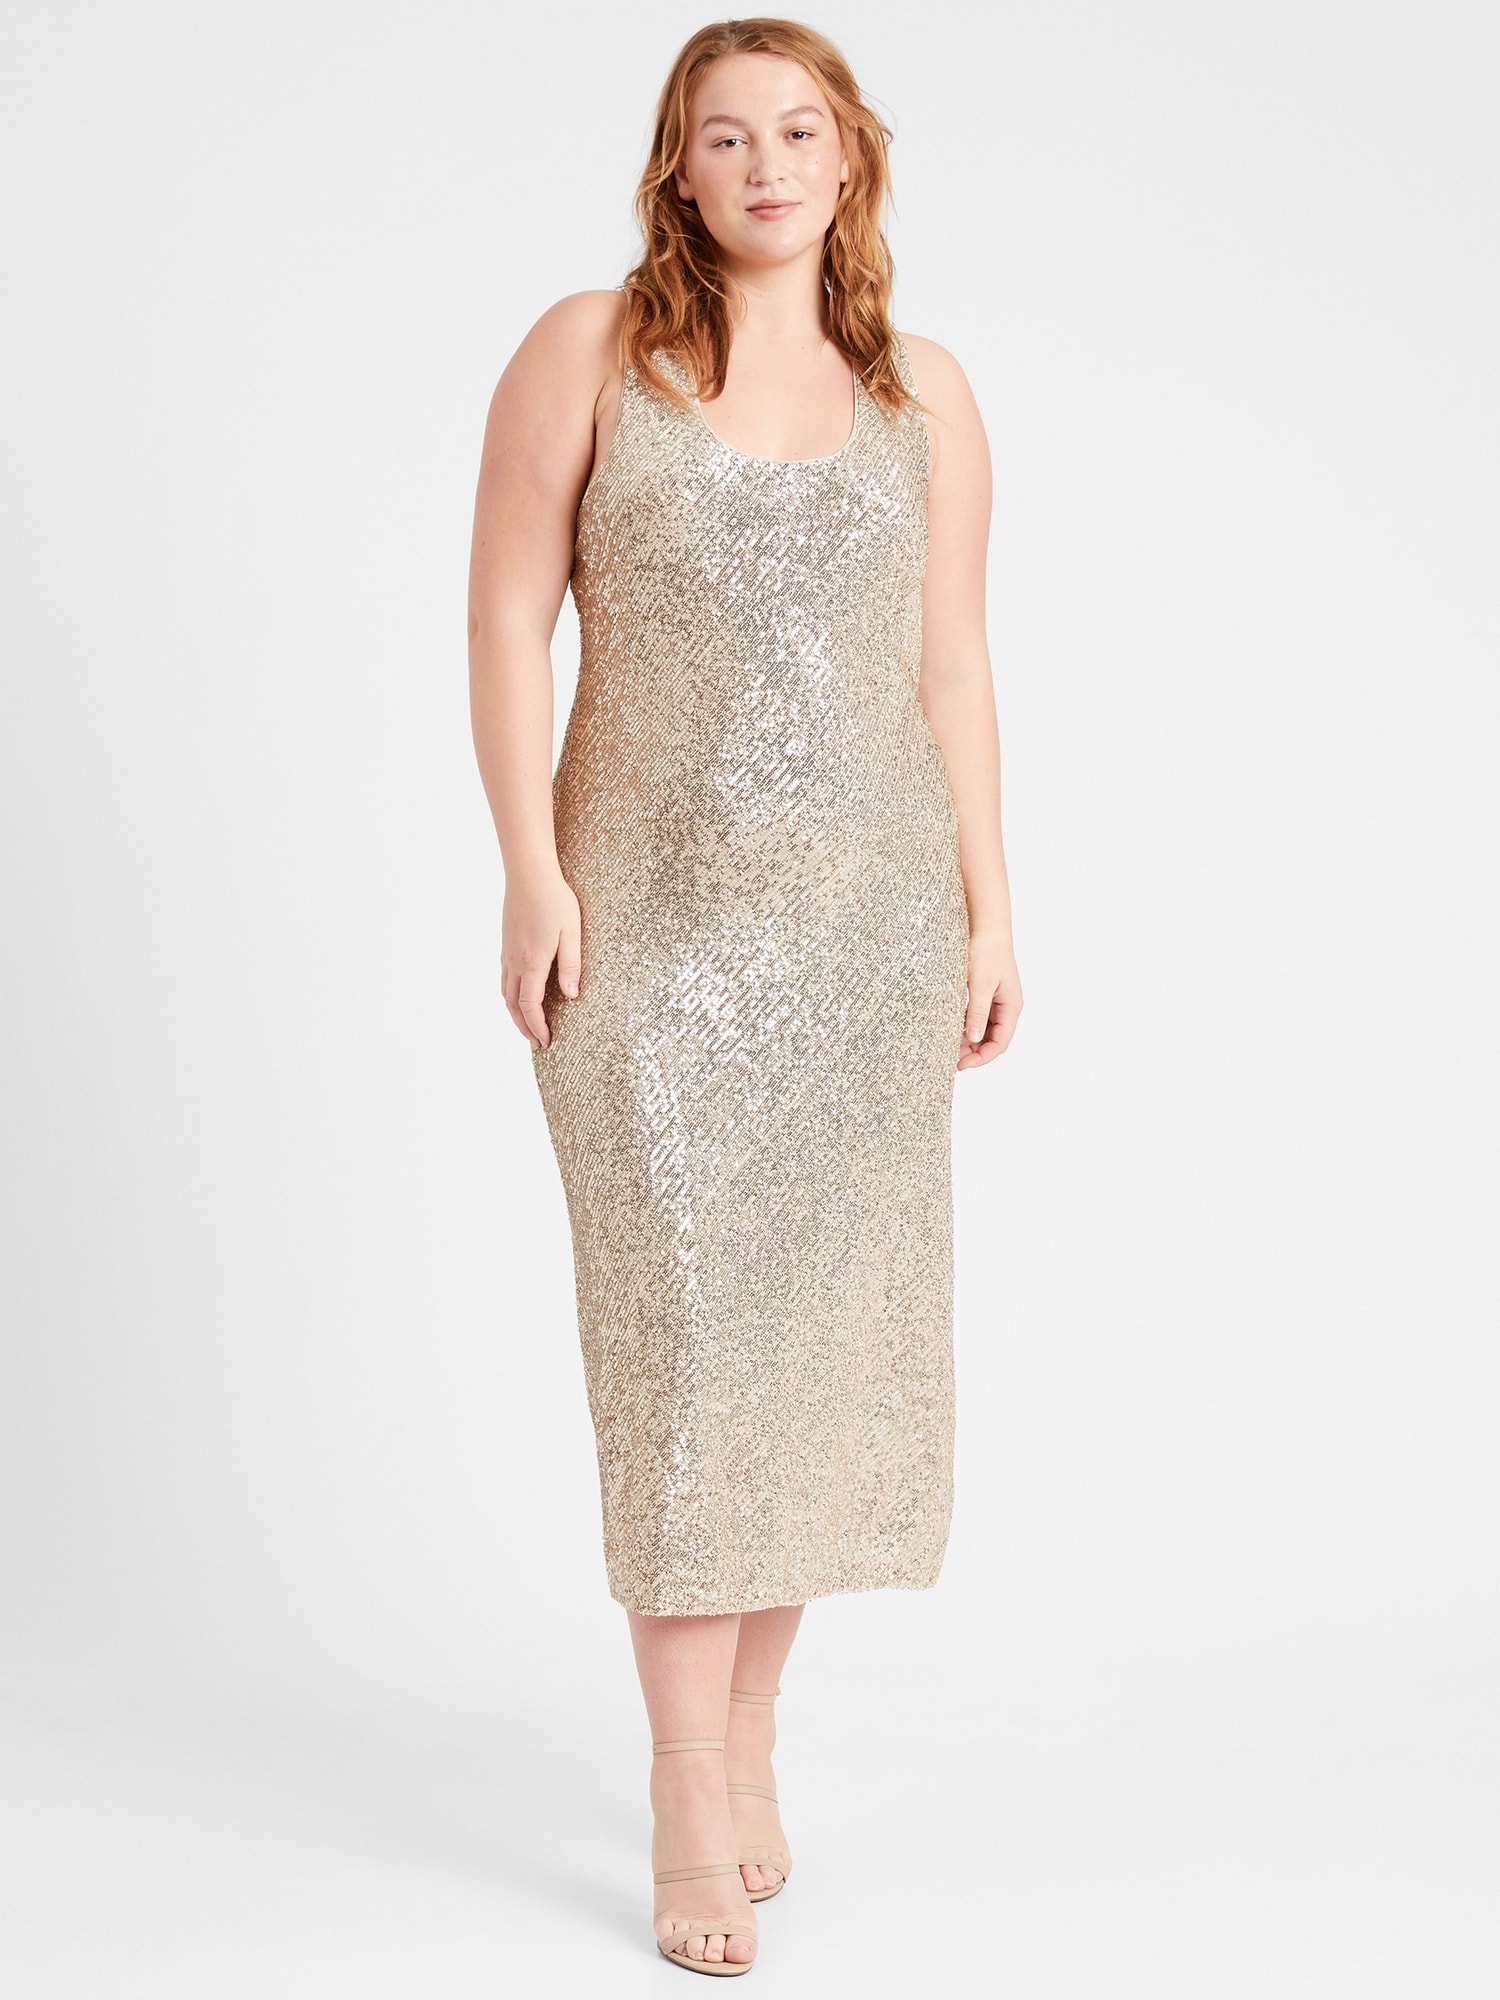 Buy Glitter Slip Dress - Order Slips online 1121475400